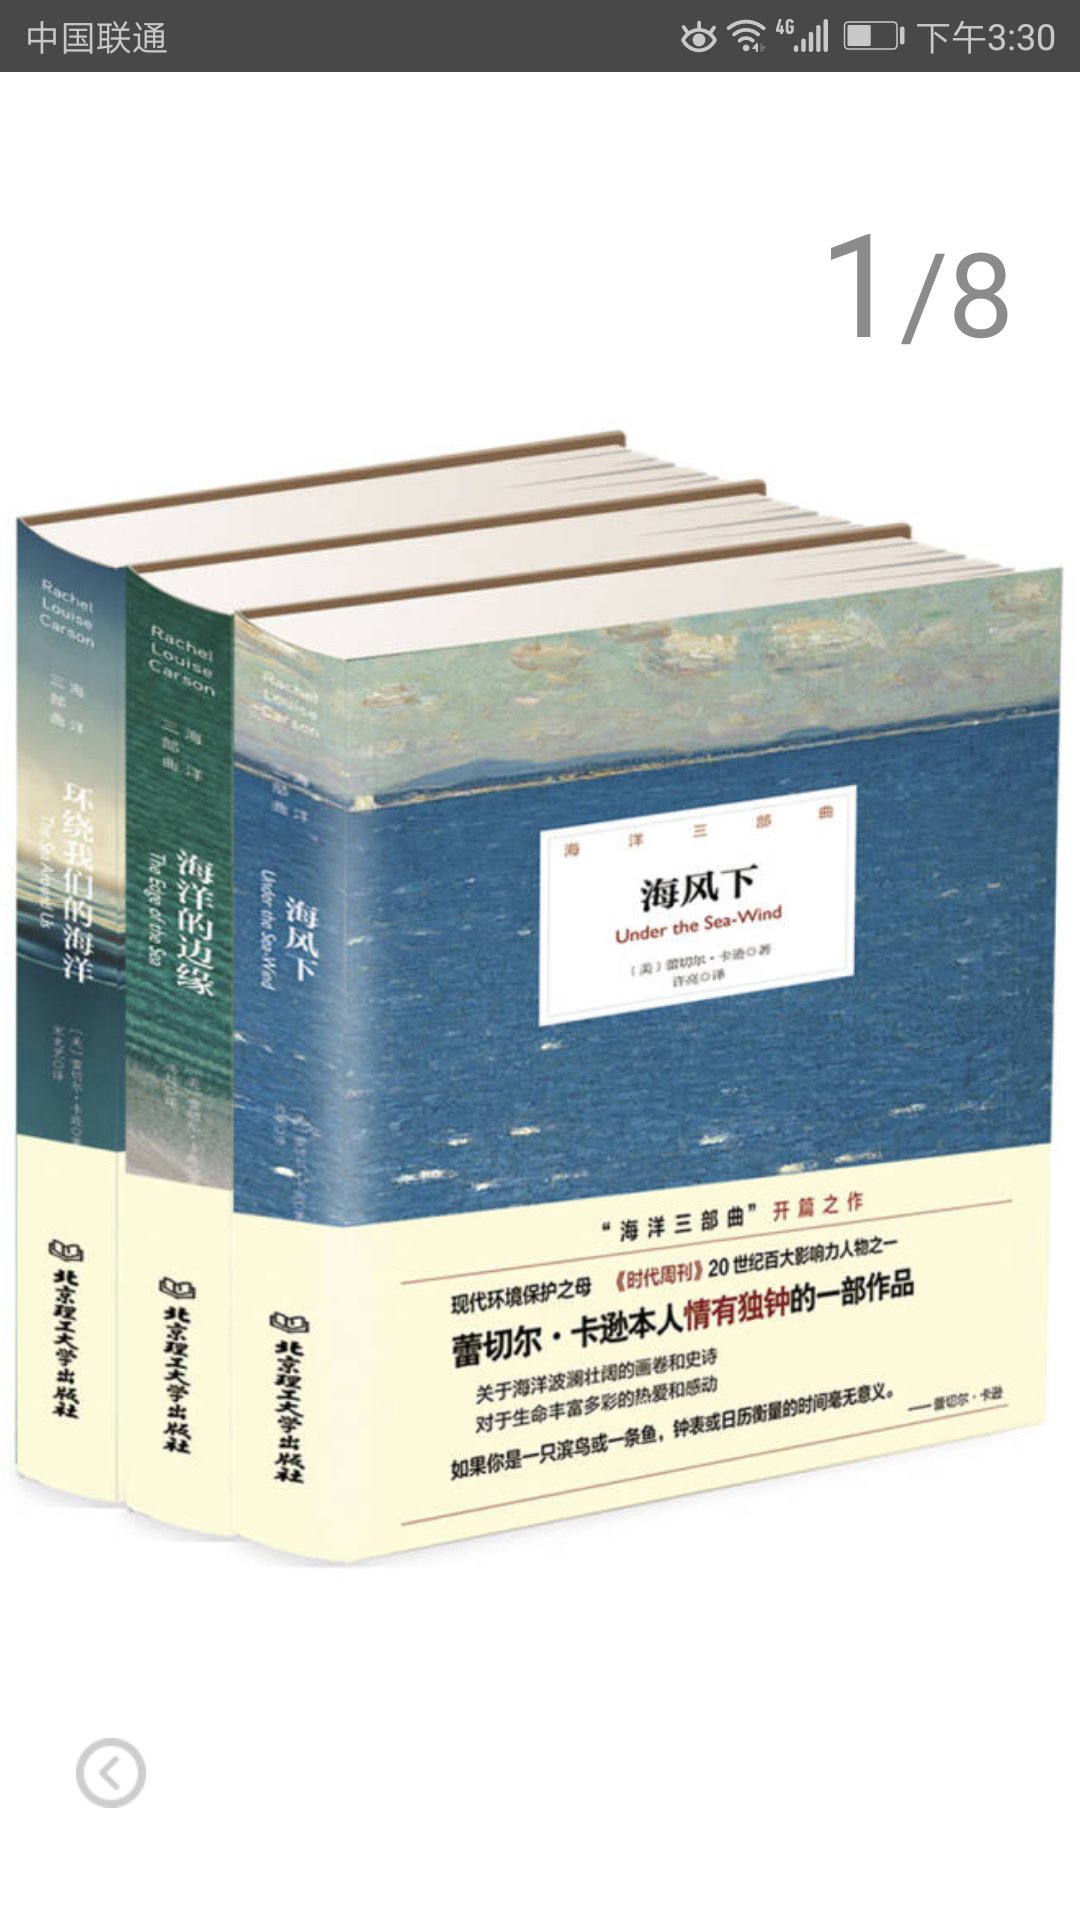 北京理工大学出版社推出的海洋三部曲，套装共三册，精装16开，书脊锁线纸质优良，排版印刷得体大方，活动期间价格实惠，送货速度快，非常满意。